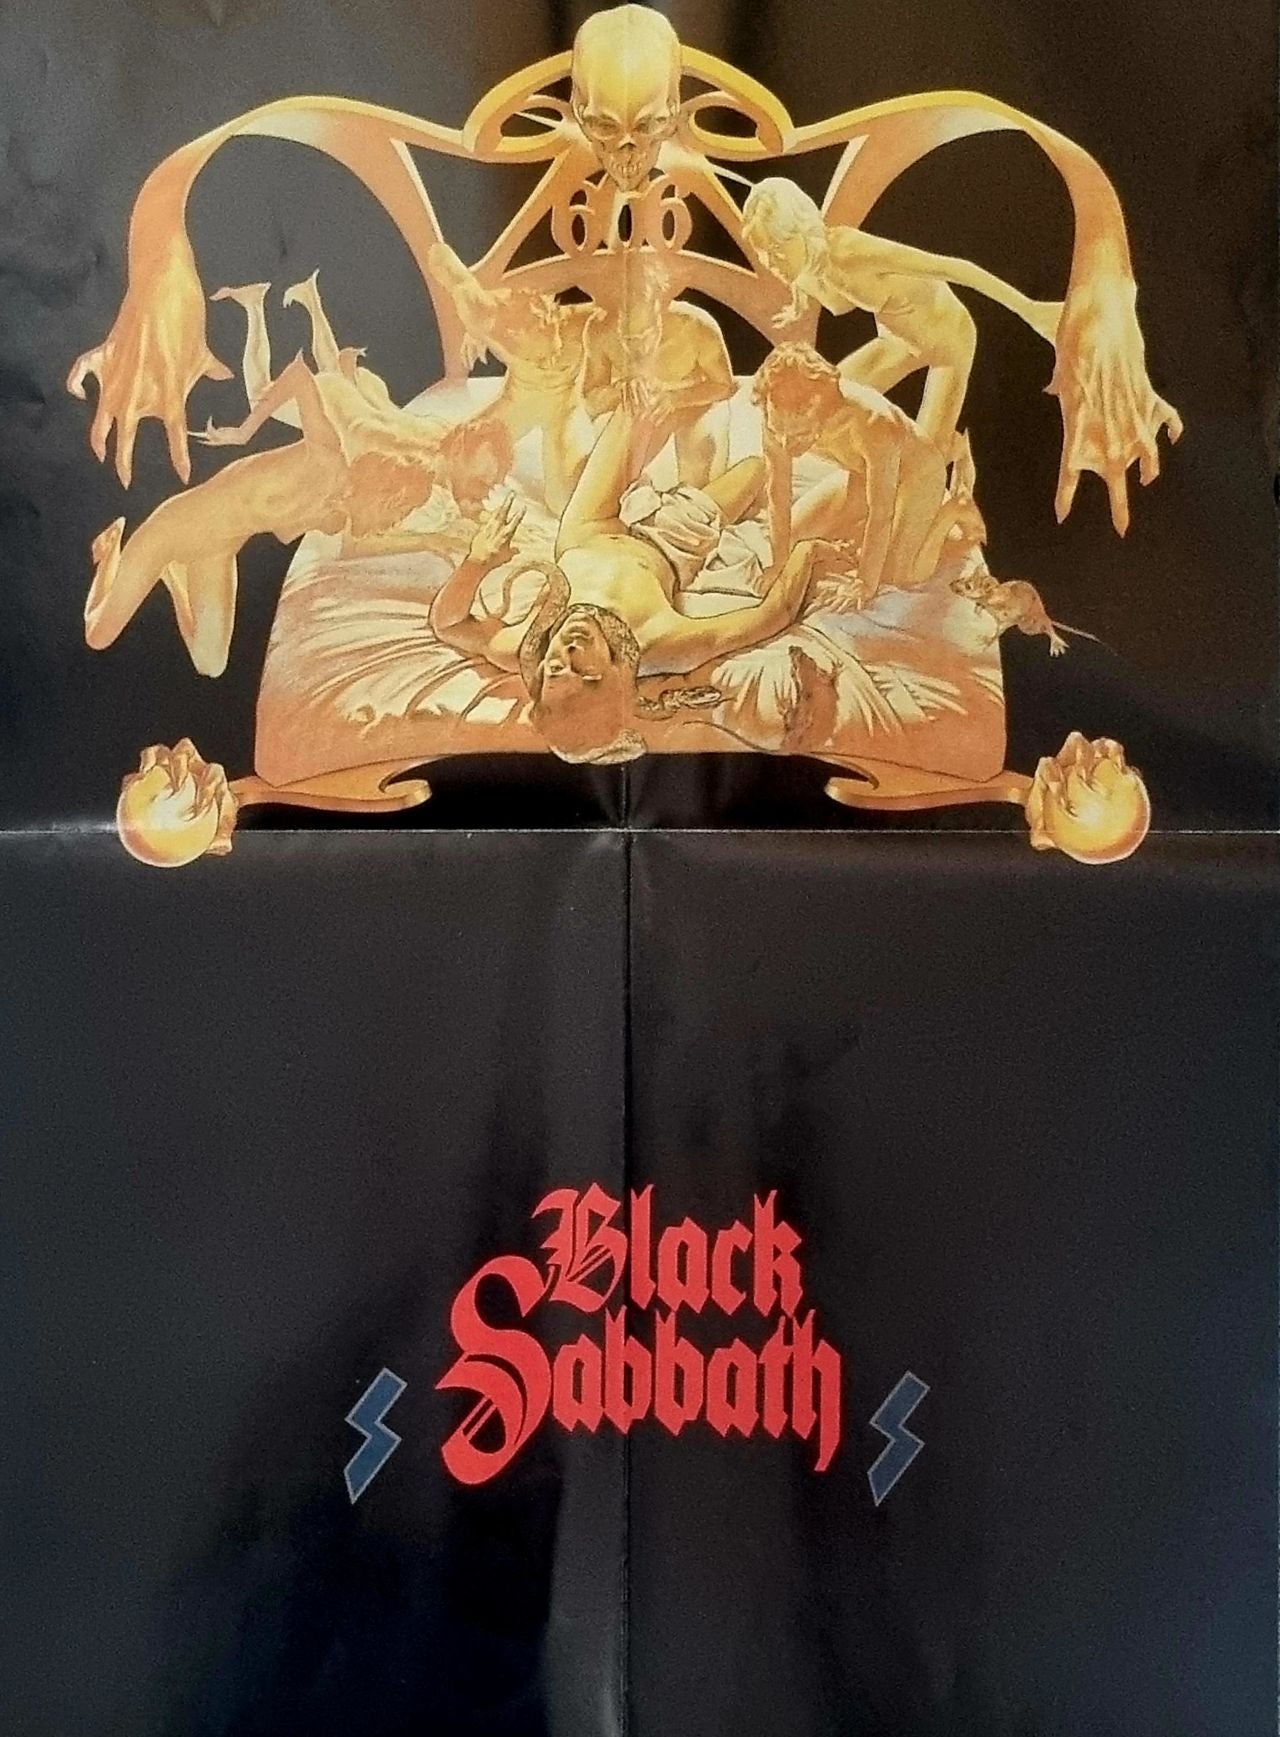 Black Sabbath The C.D. Collection UK Cd album box set — RareVinyl.com